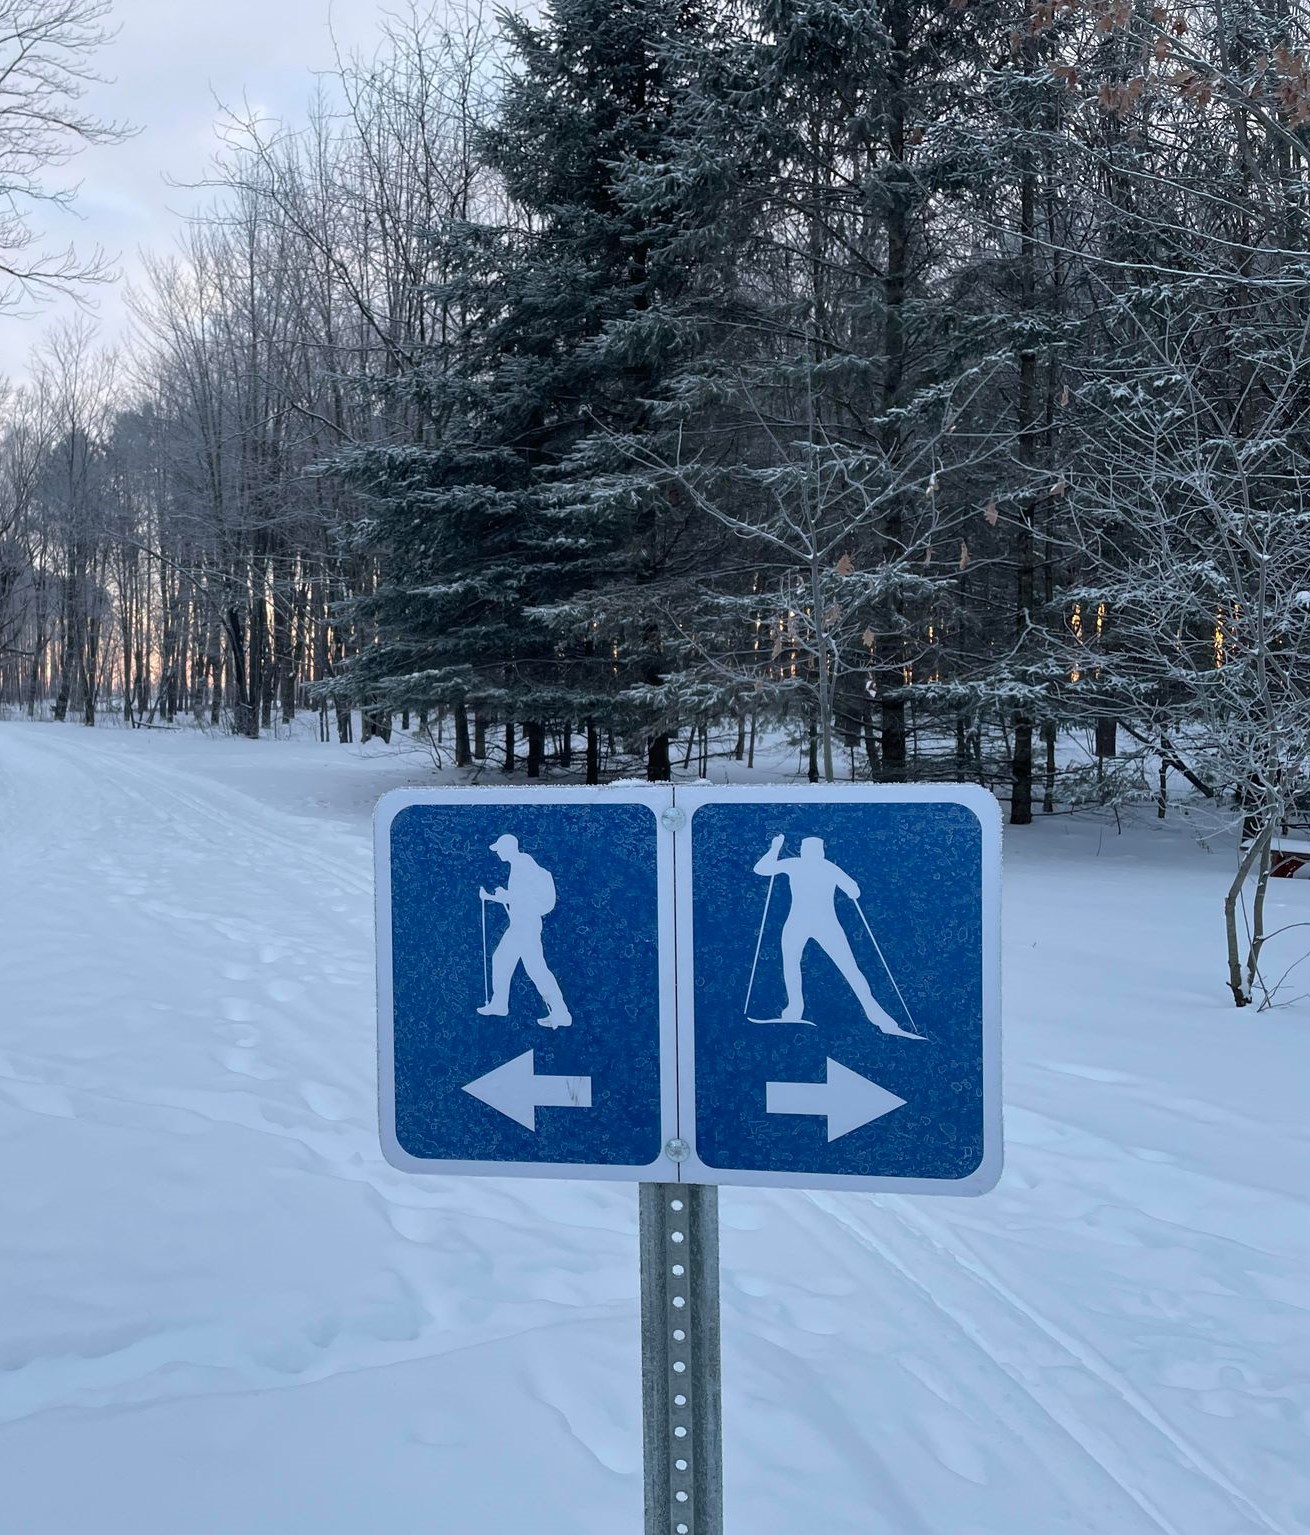 Pancarte affichant sentiers de randonnée à gauche et de ski de fond à droite